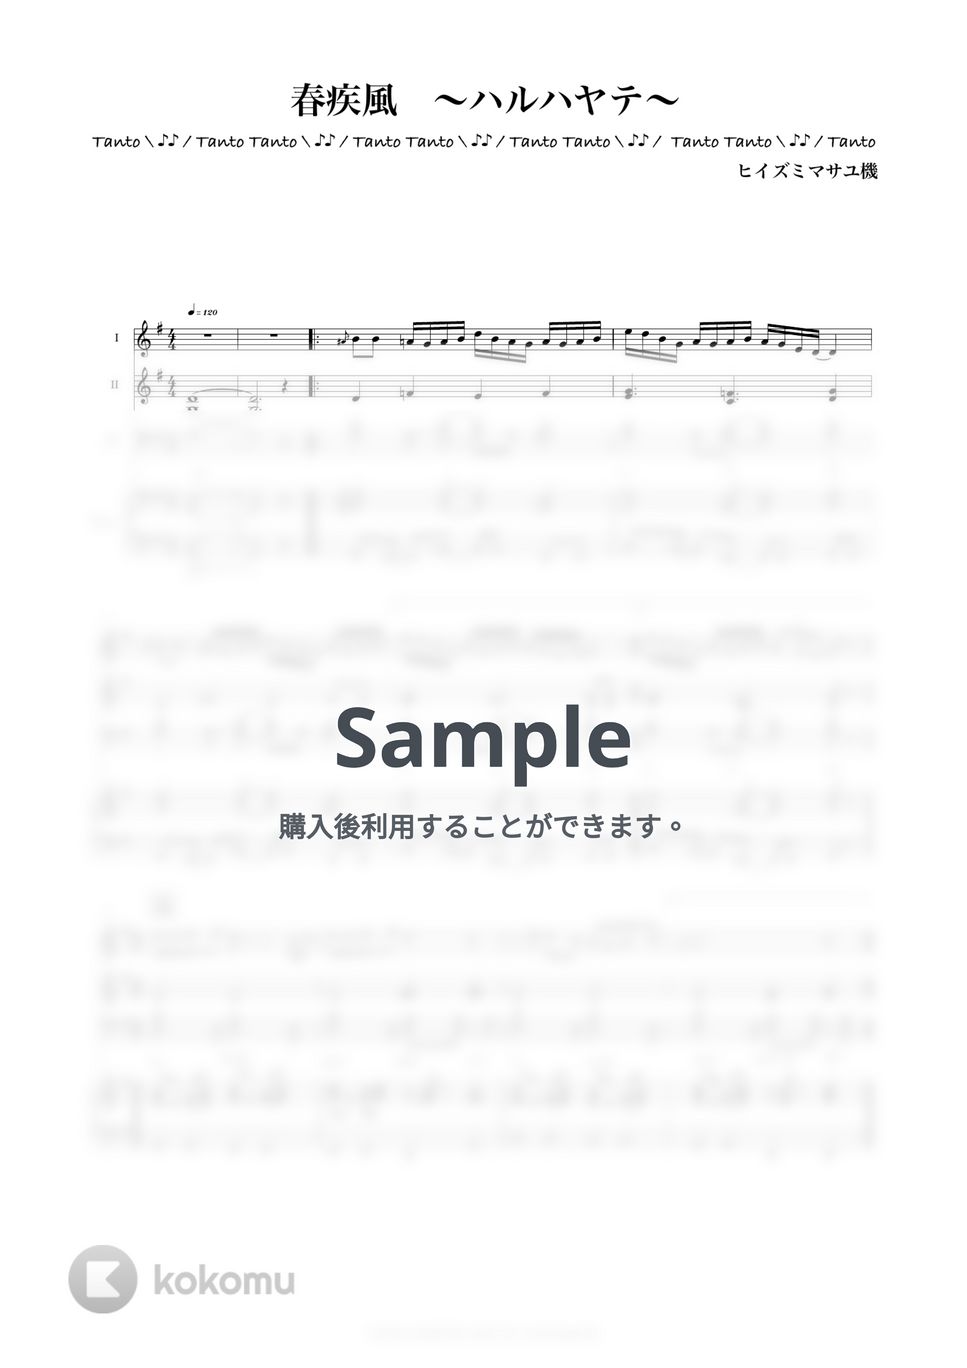 ヒイズミ マサユ機 - PE'Z 春疾風 ハルハヤテ (Kenhamo 3 & Piano Ensemble in G) by Tanto Tanto